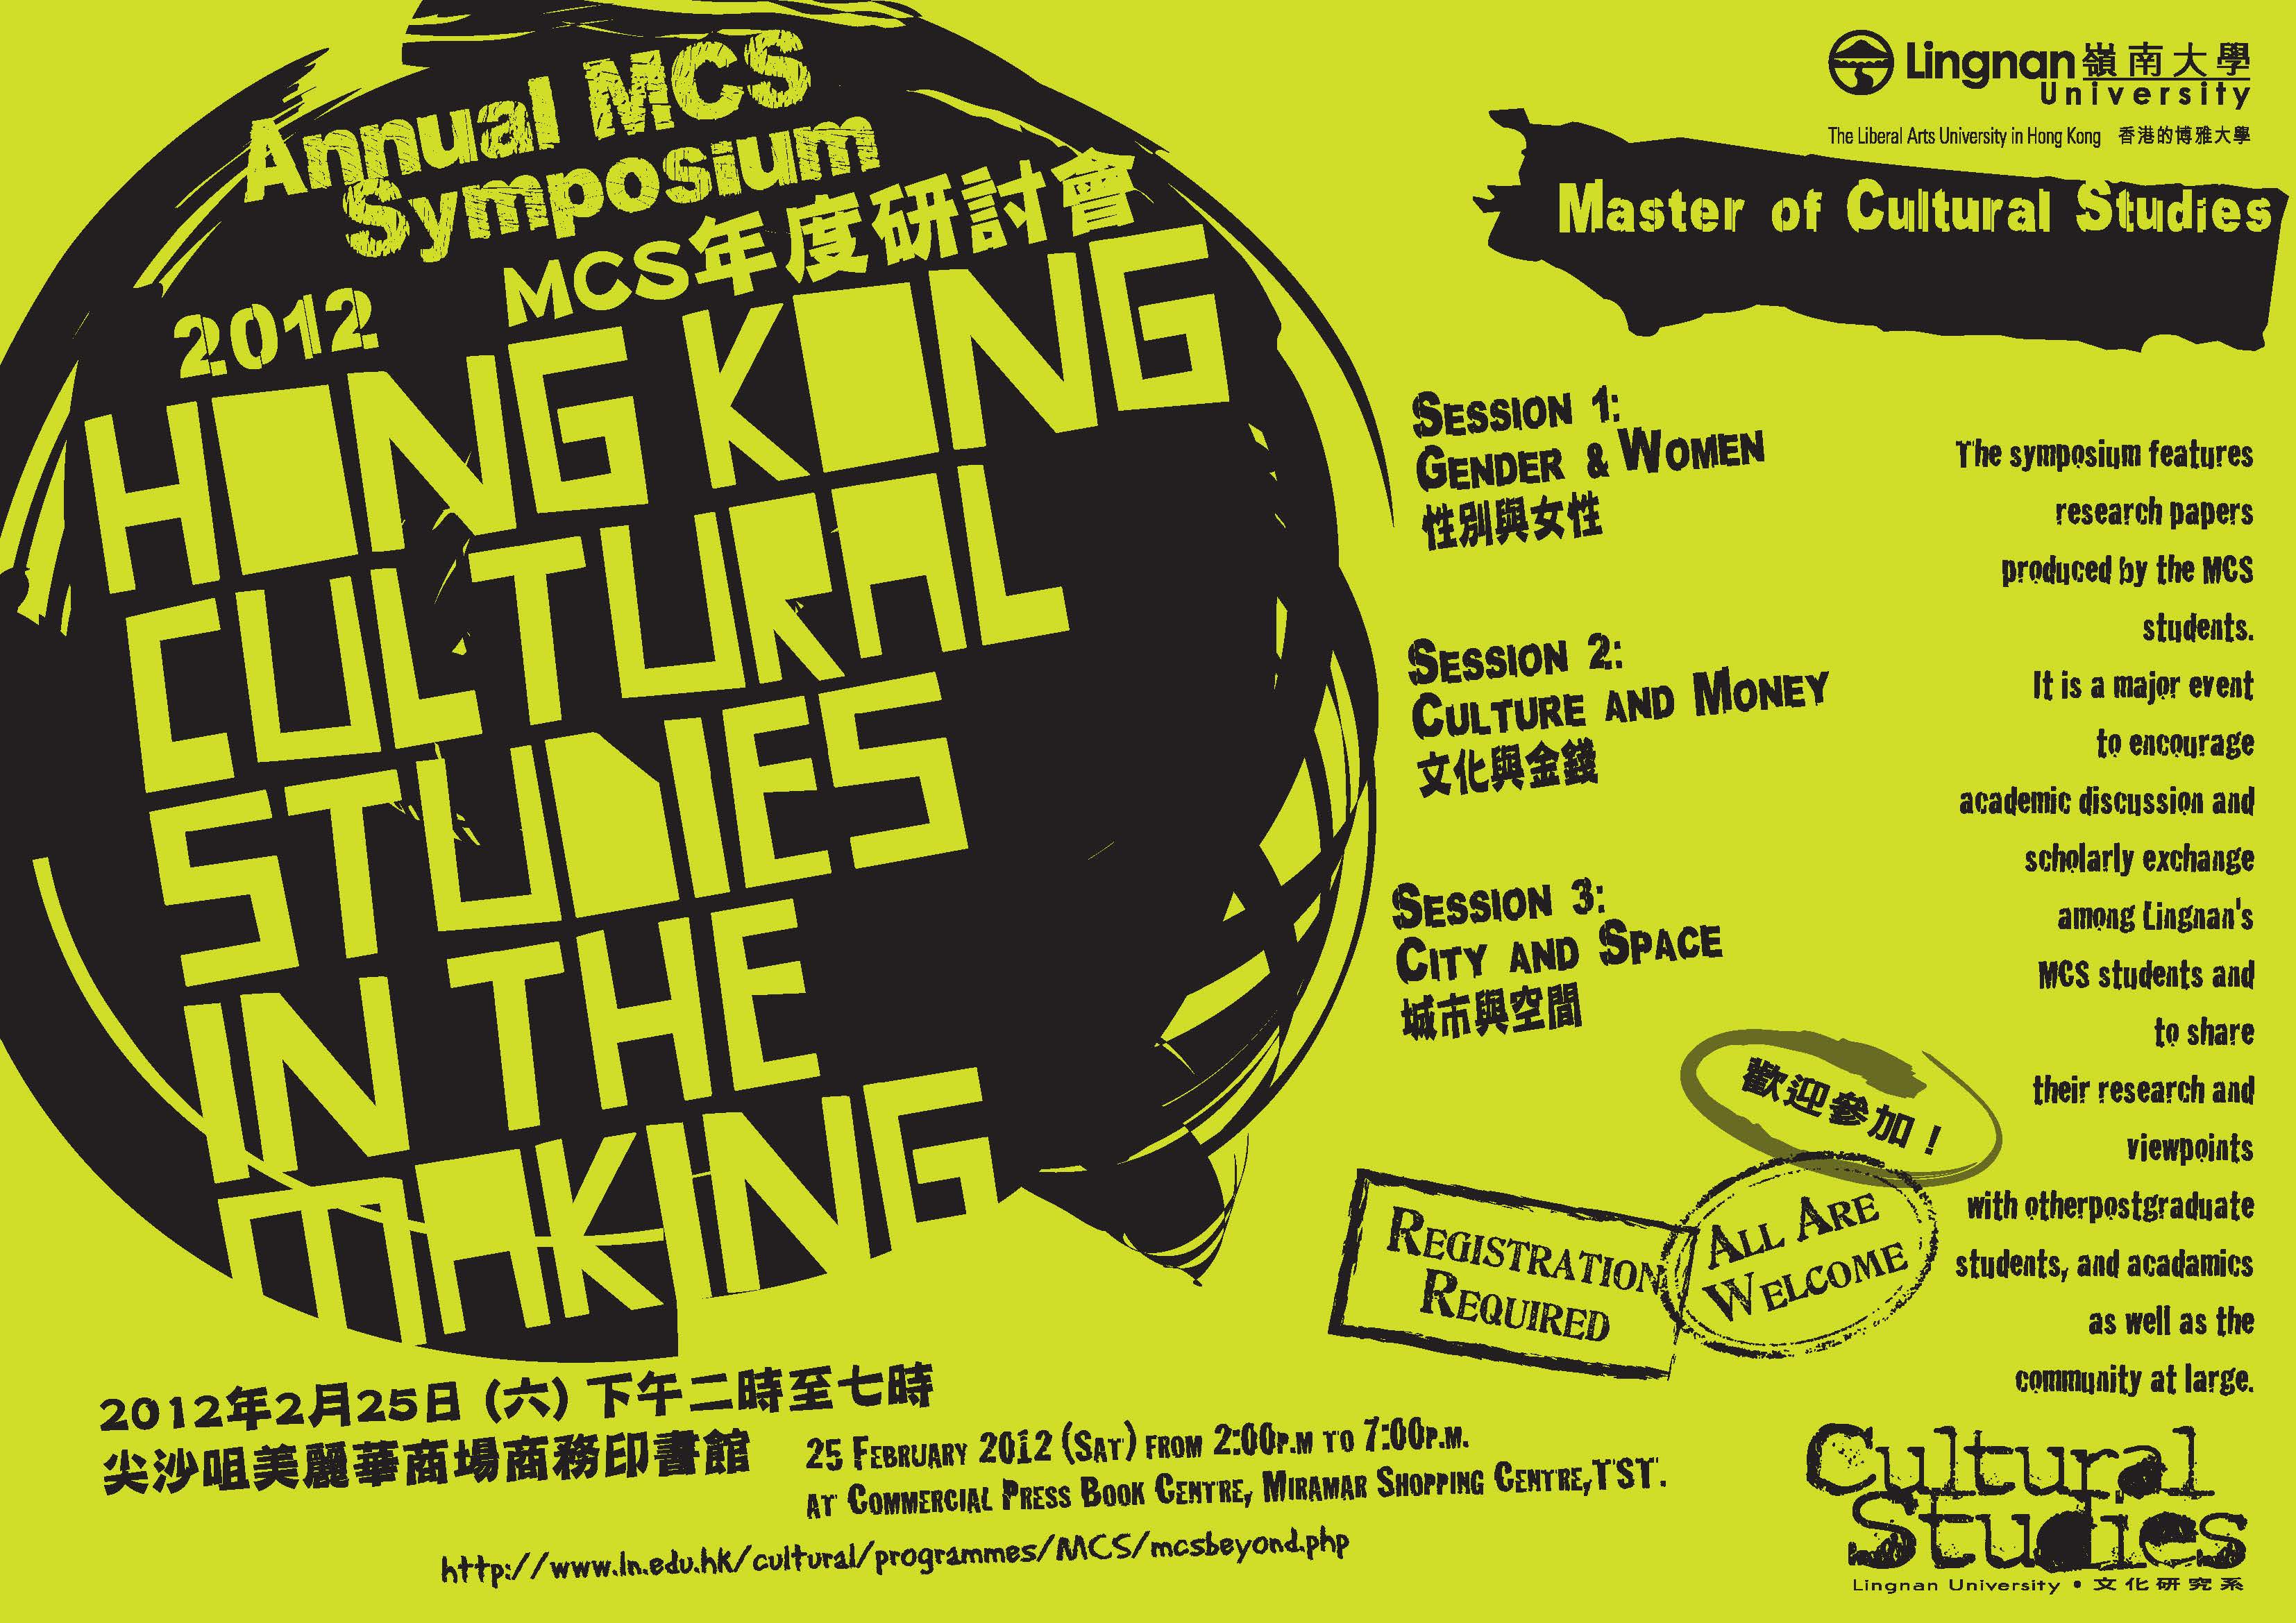 2012 MCS 年度研討會 = 2012 Annual MCS Symposium